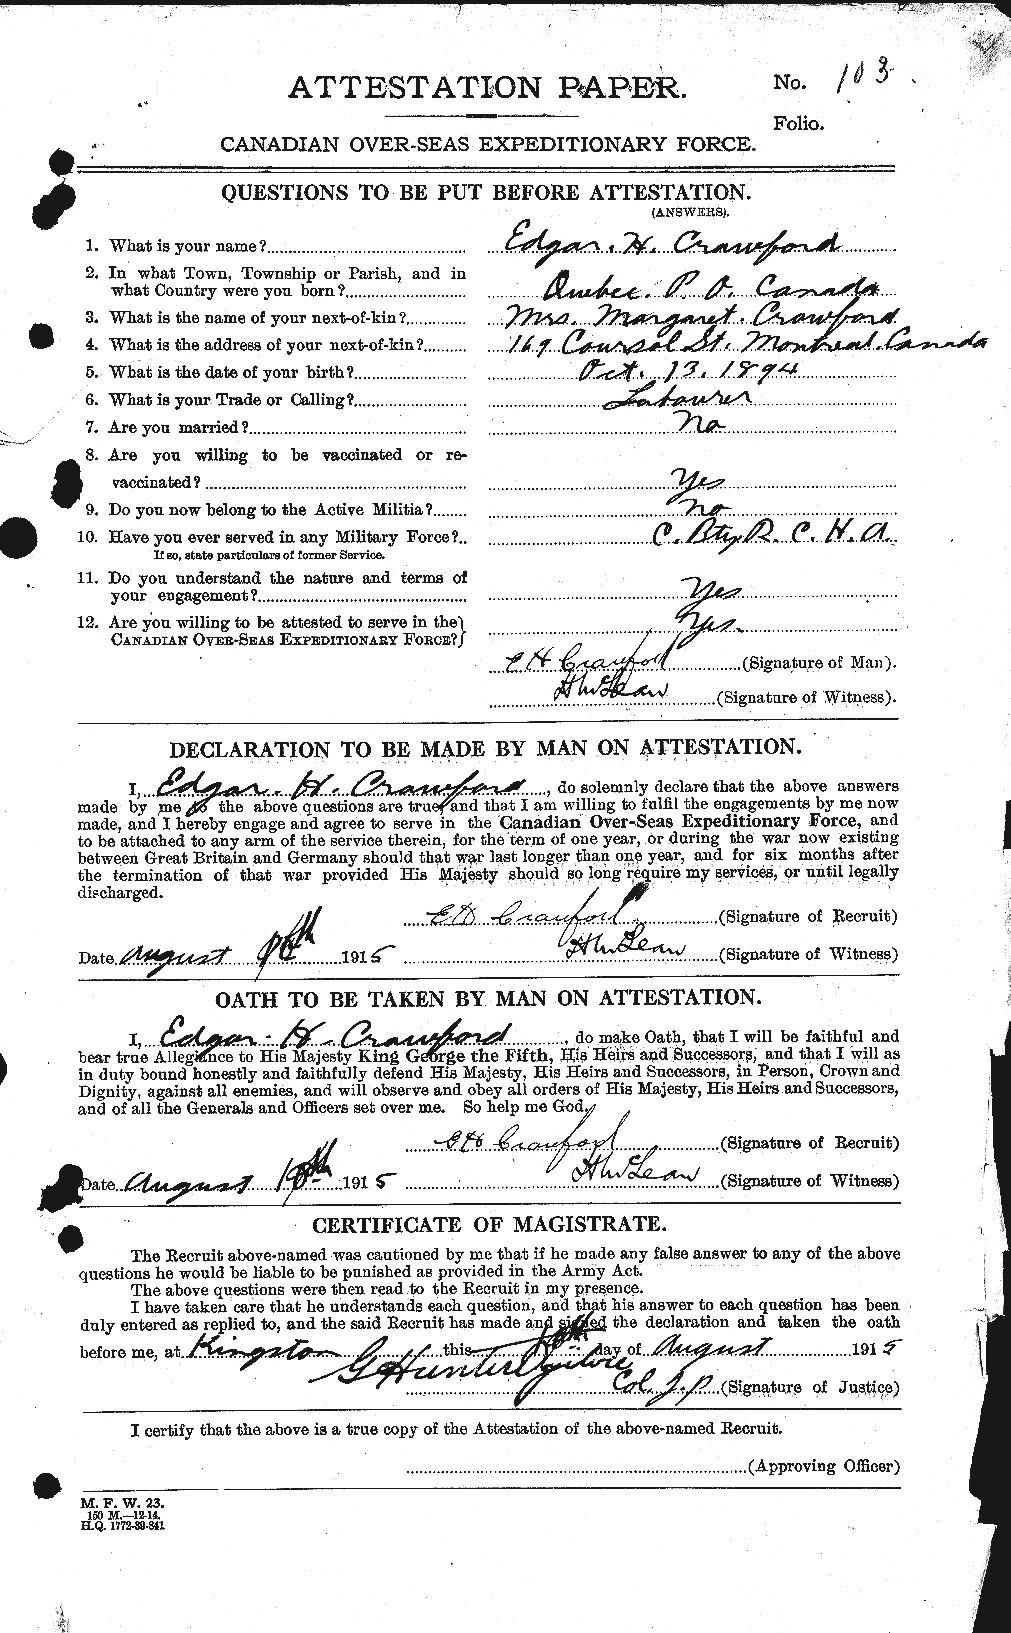 Dossiers du Personnel de la Première Guerre mondiale - CEC 060806a